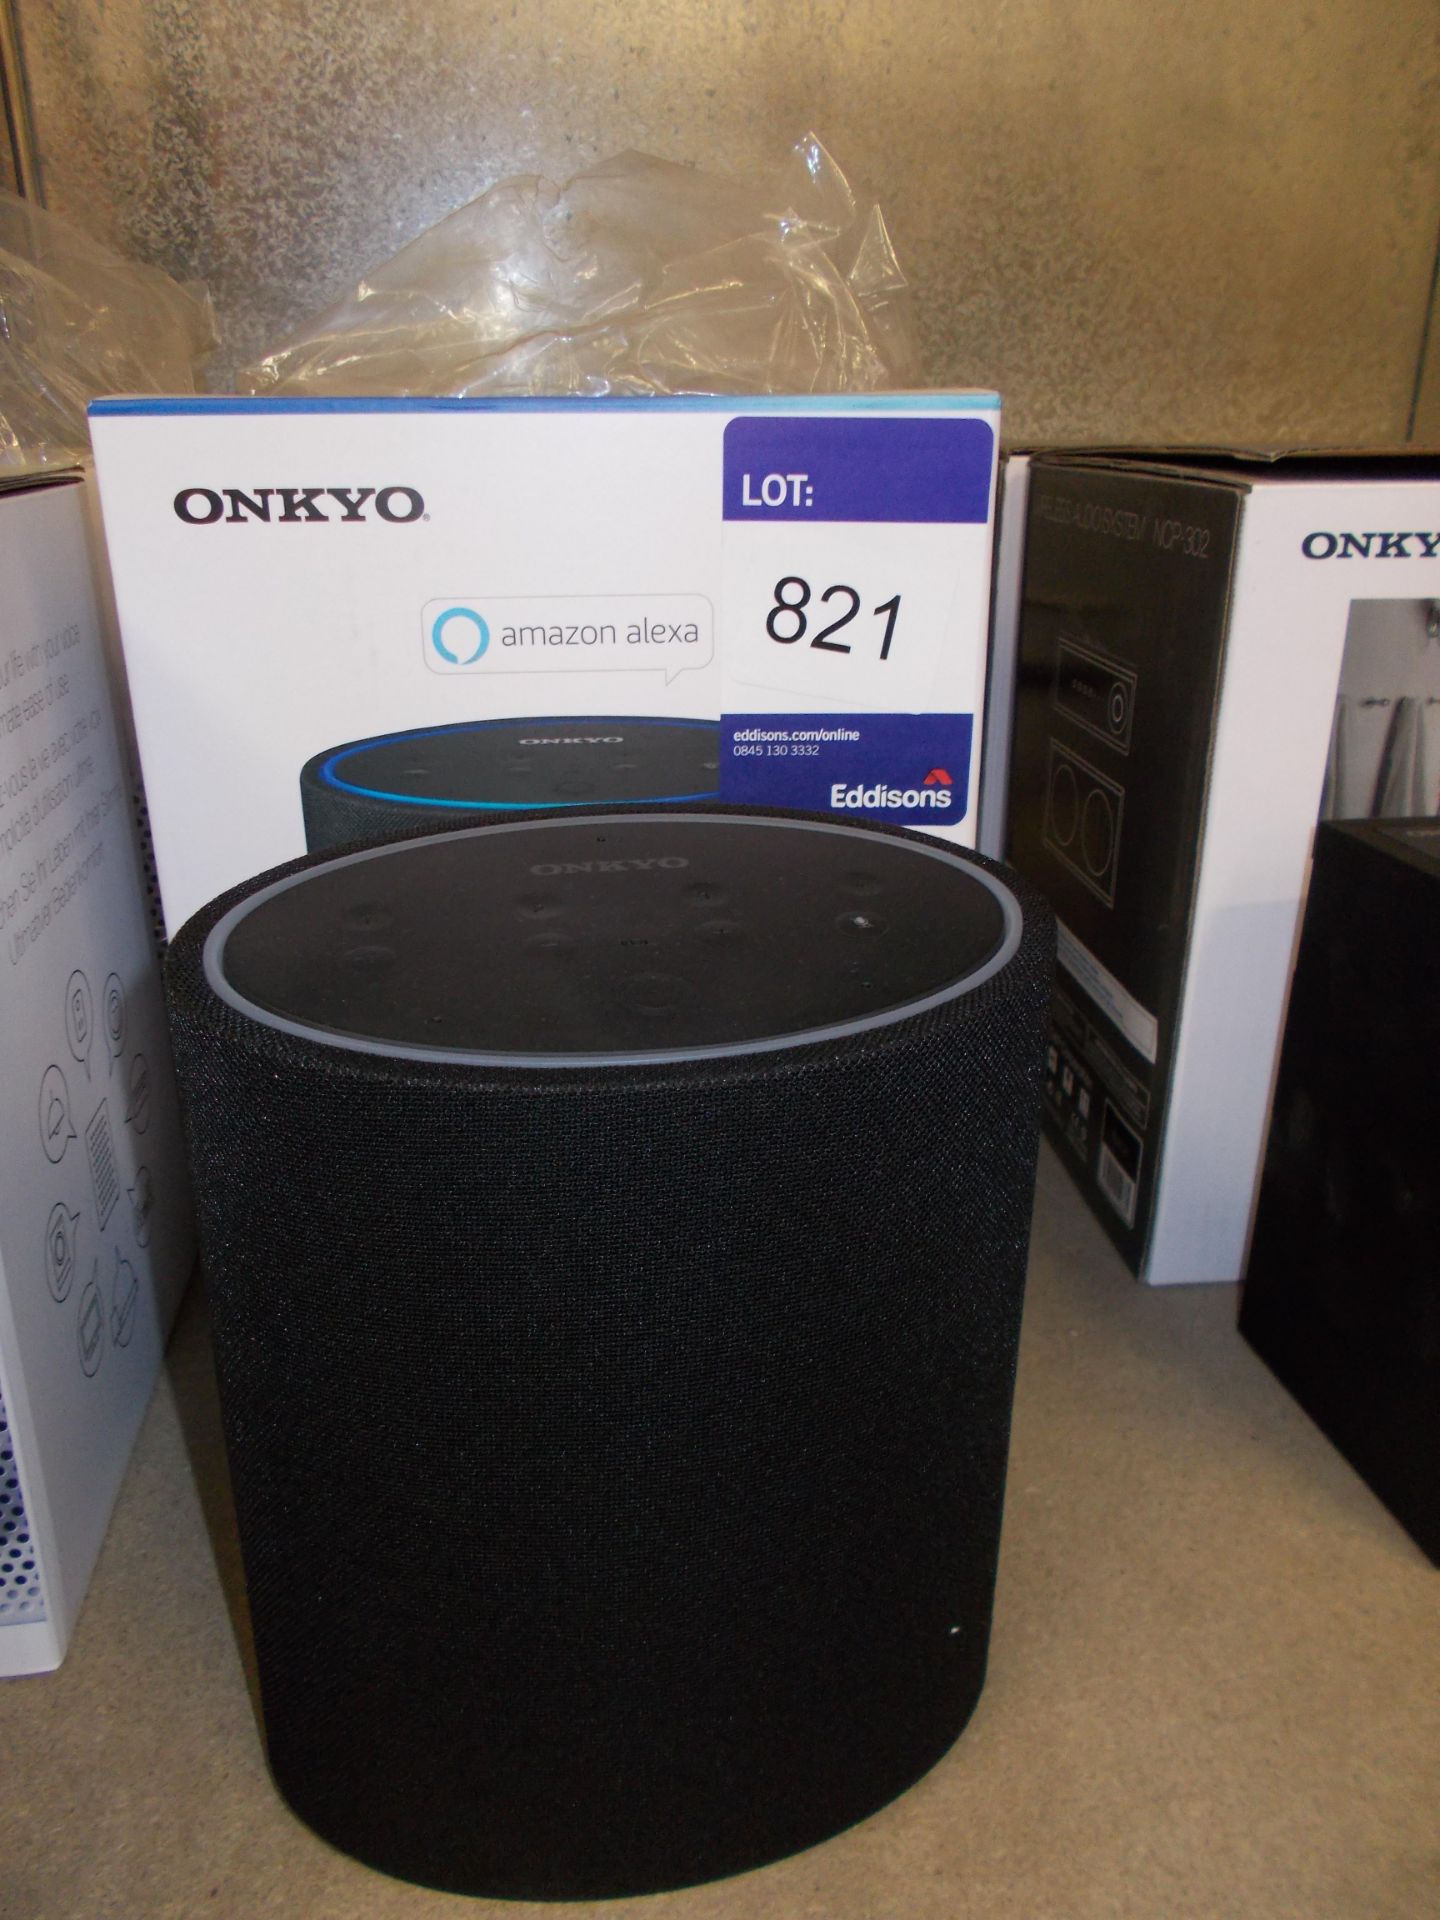 Onkyo Smart Speaker P3 (on display) – RRP £90